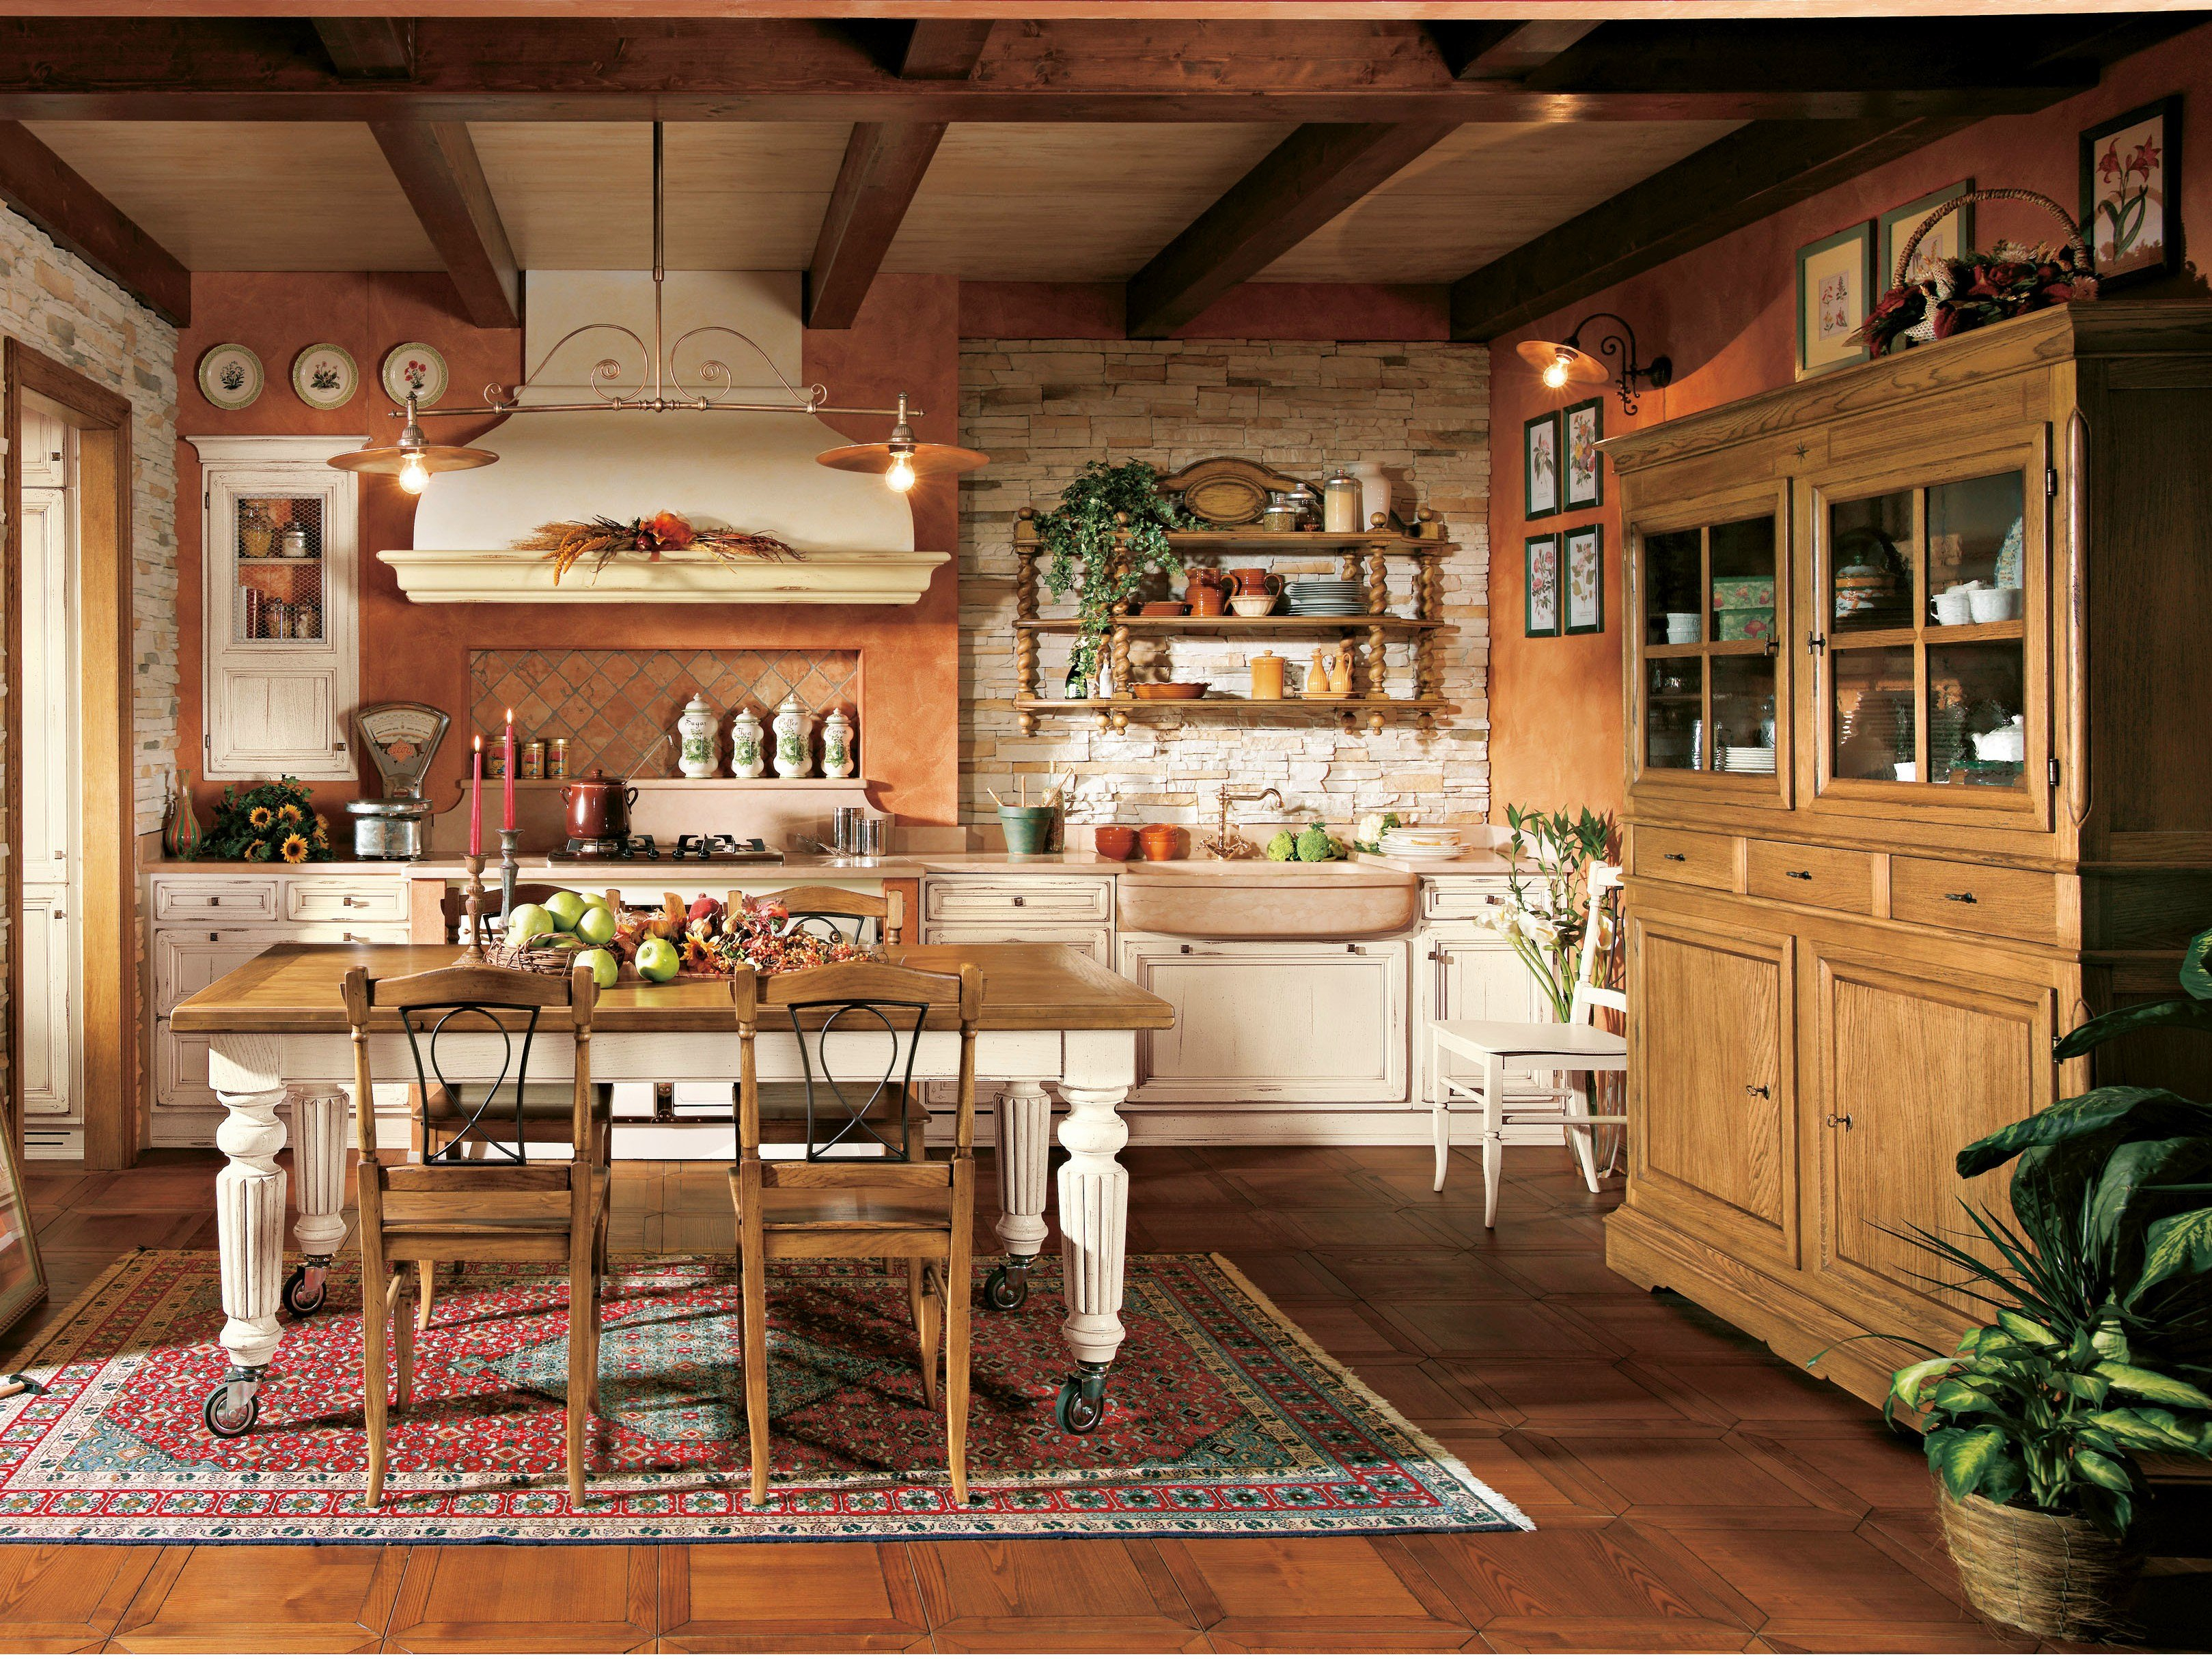 Country кантри. Кухня в Тосканском стиле Кантри. Оцилиндровочный дом в стиле Кантри и Прованс. Стиль Кантри в интерьере кухни. Деревенская кухня интерьер.